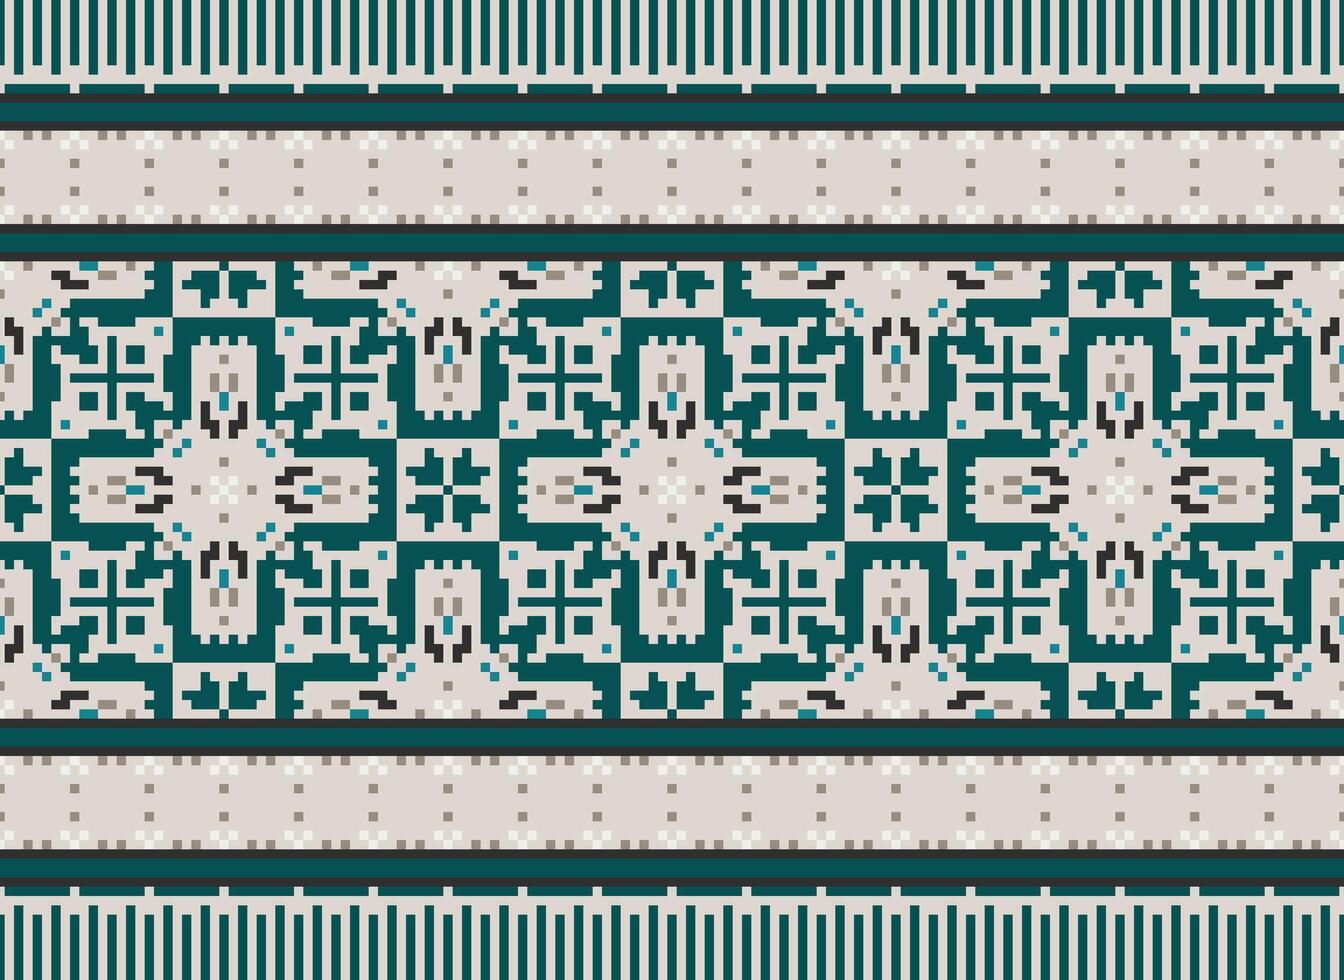 traverser point. pixels. géométrique ethnique Oriental sans couture modèle traditionnel Contexte. style aztèque abstrait vecteur illustration. conception pour textile, rideau, tapis, fond d'écran, vêtements, emballage